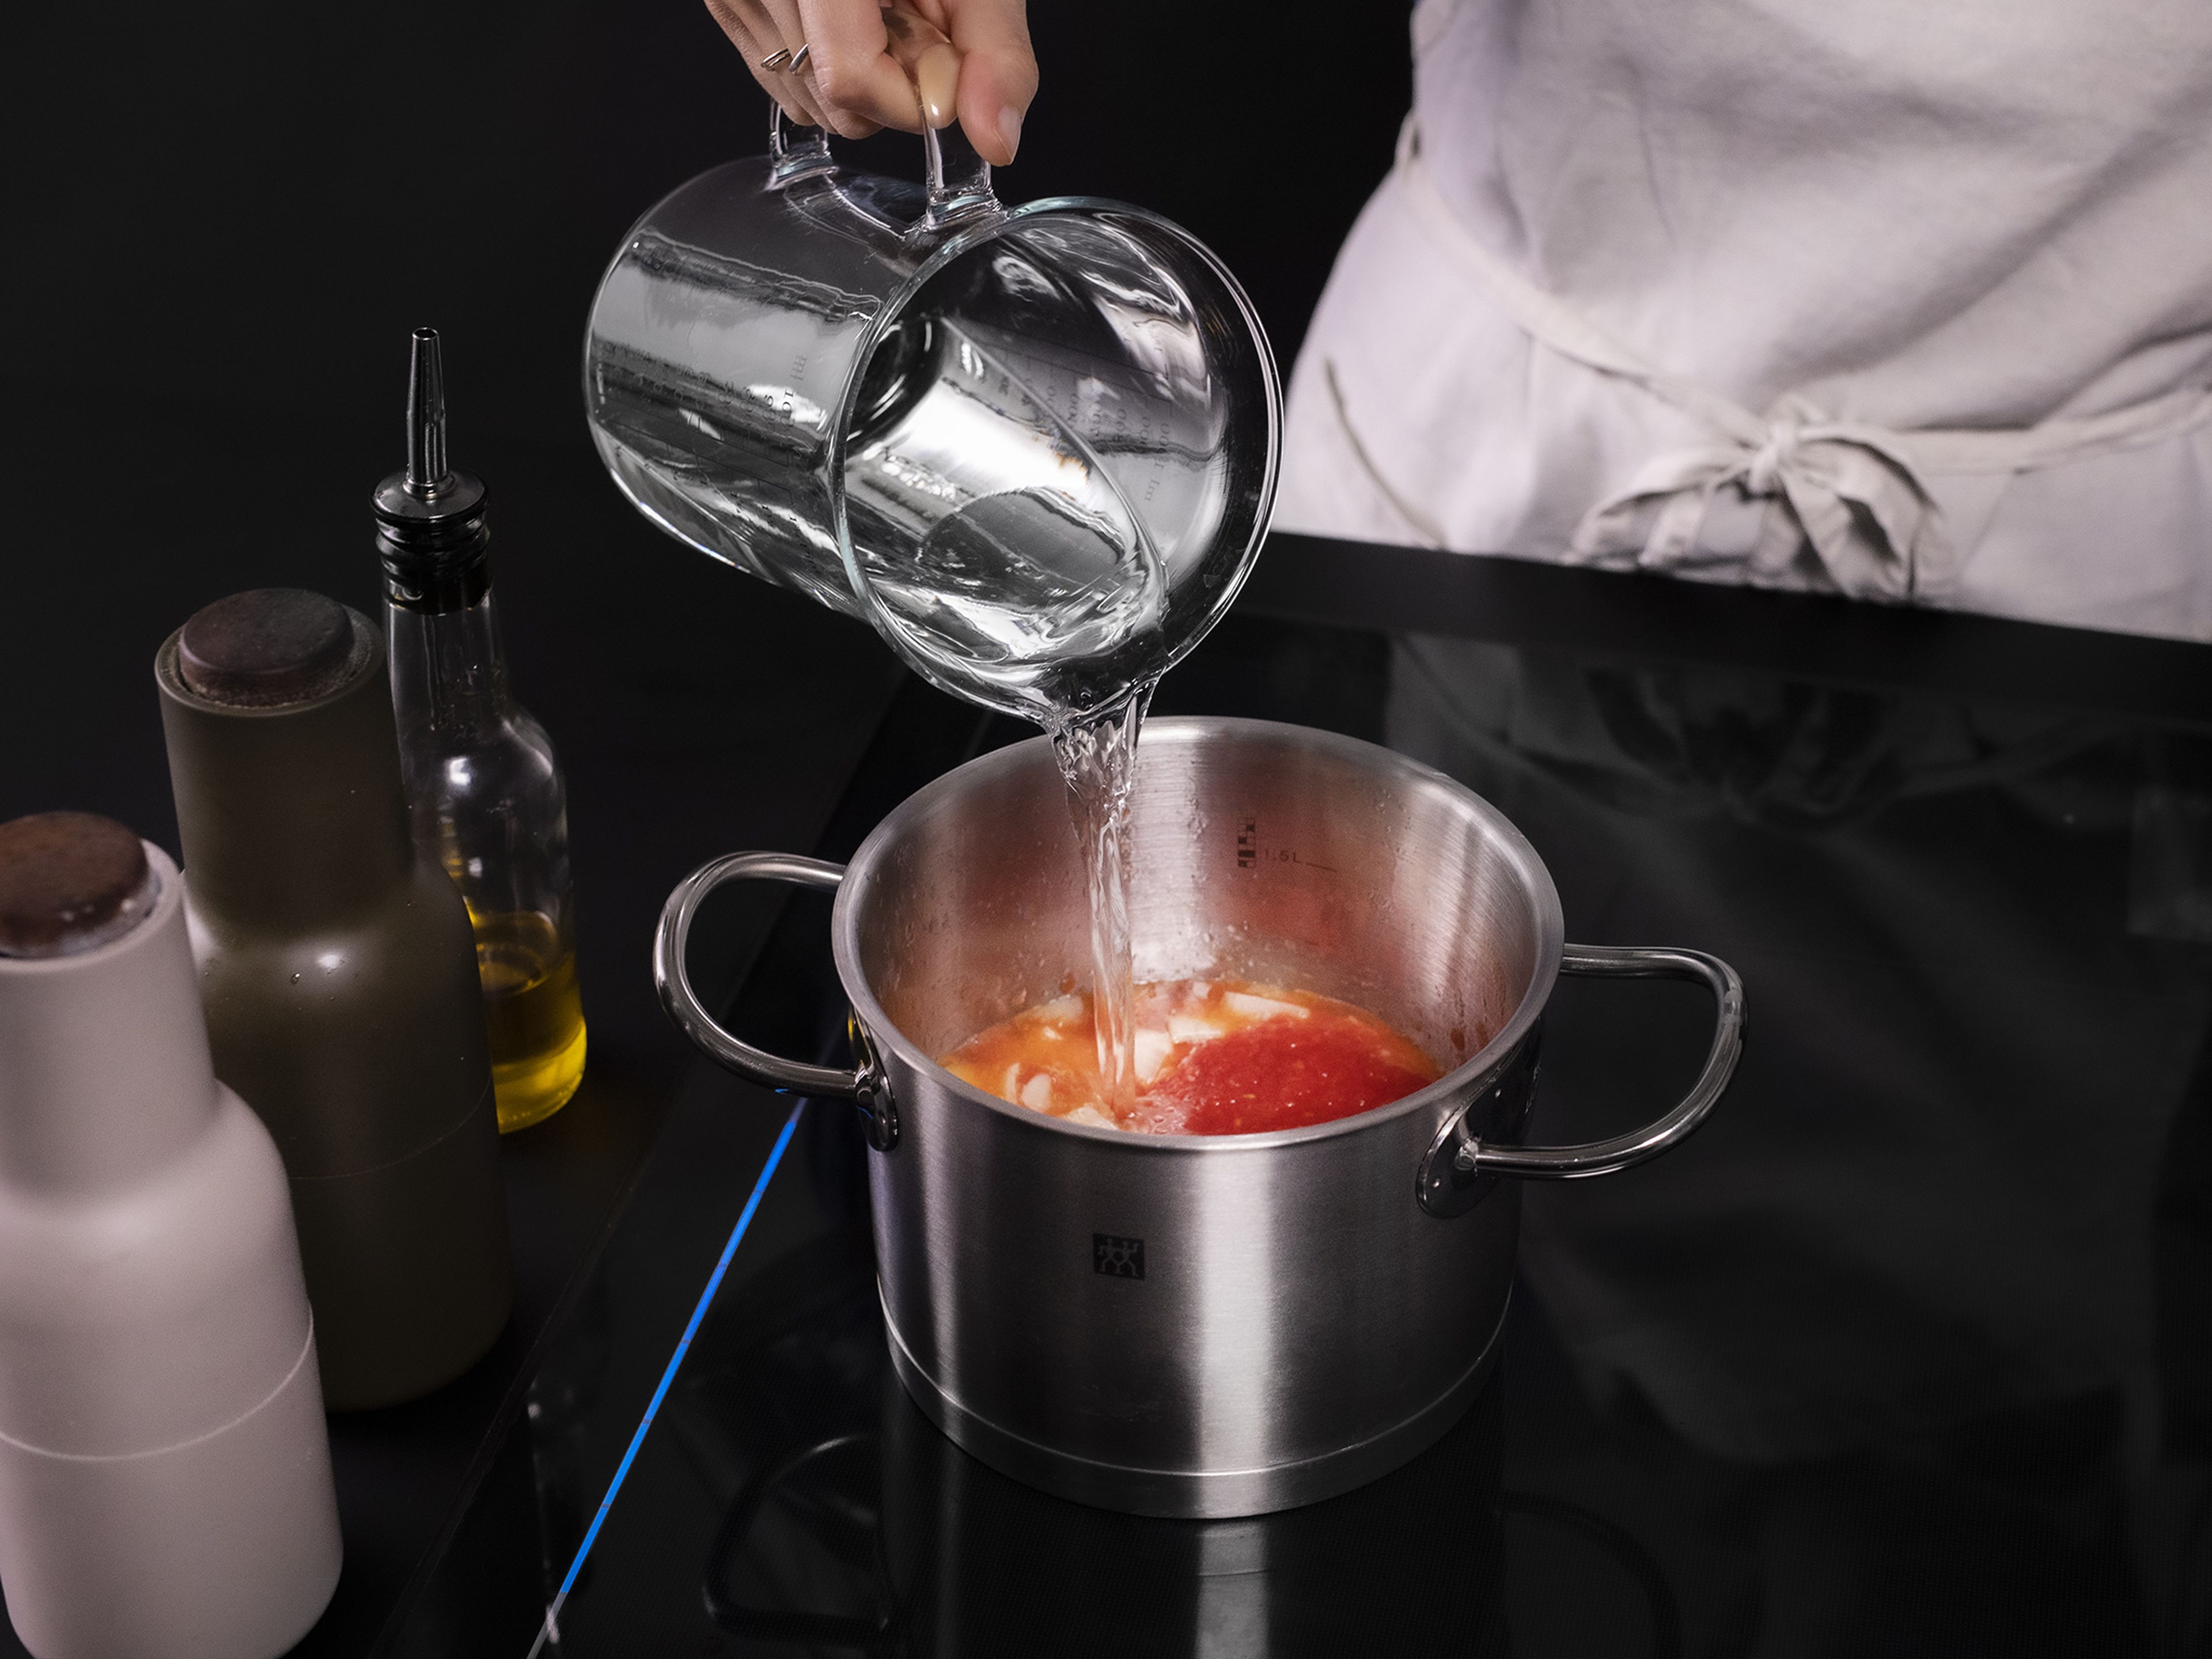 Die Zwiebel schälen und hacken. Etwas Butter in einem Topf bei mittlerer Hitze schmelzen lassen. Dann die Zwiebeln, stückigen Tomaten aus der Dose und Wasser der 1,5 fachen Dosenmenge hinzugeben. Mit Salz abschmecken, aufkochen und für ca. 30 Min. köcheln lassen.